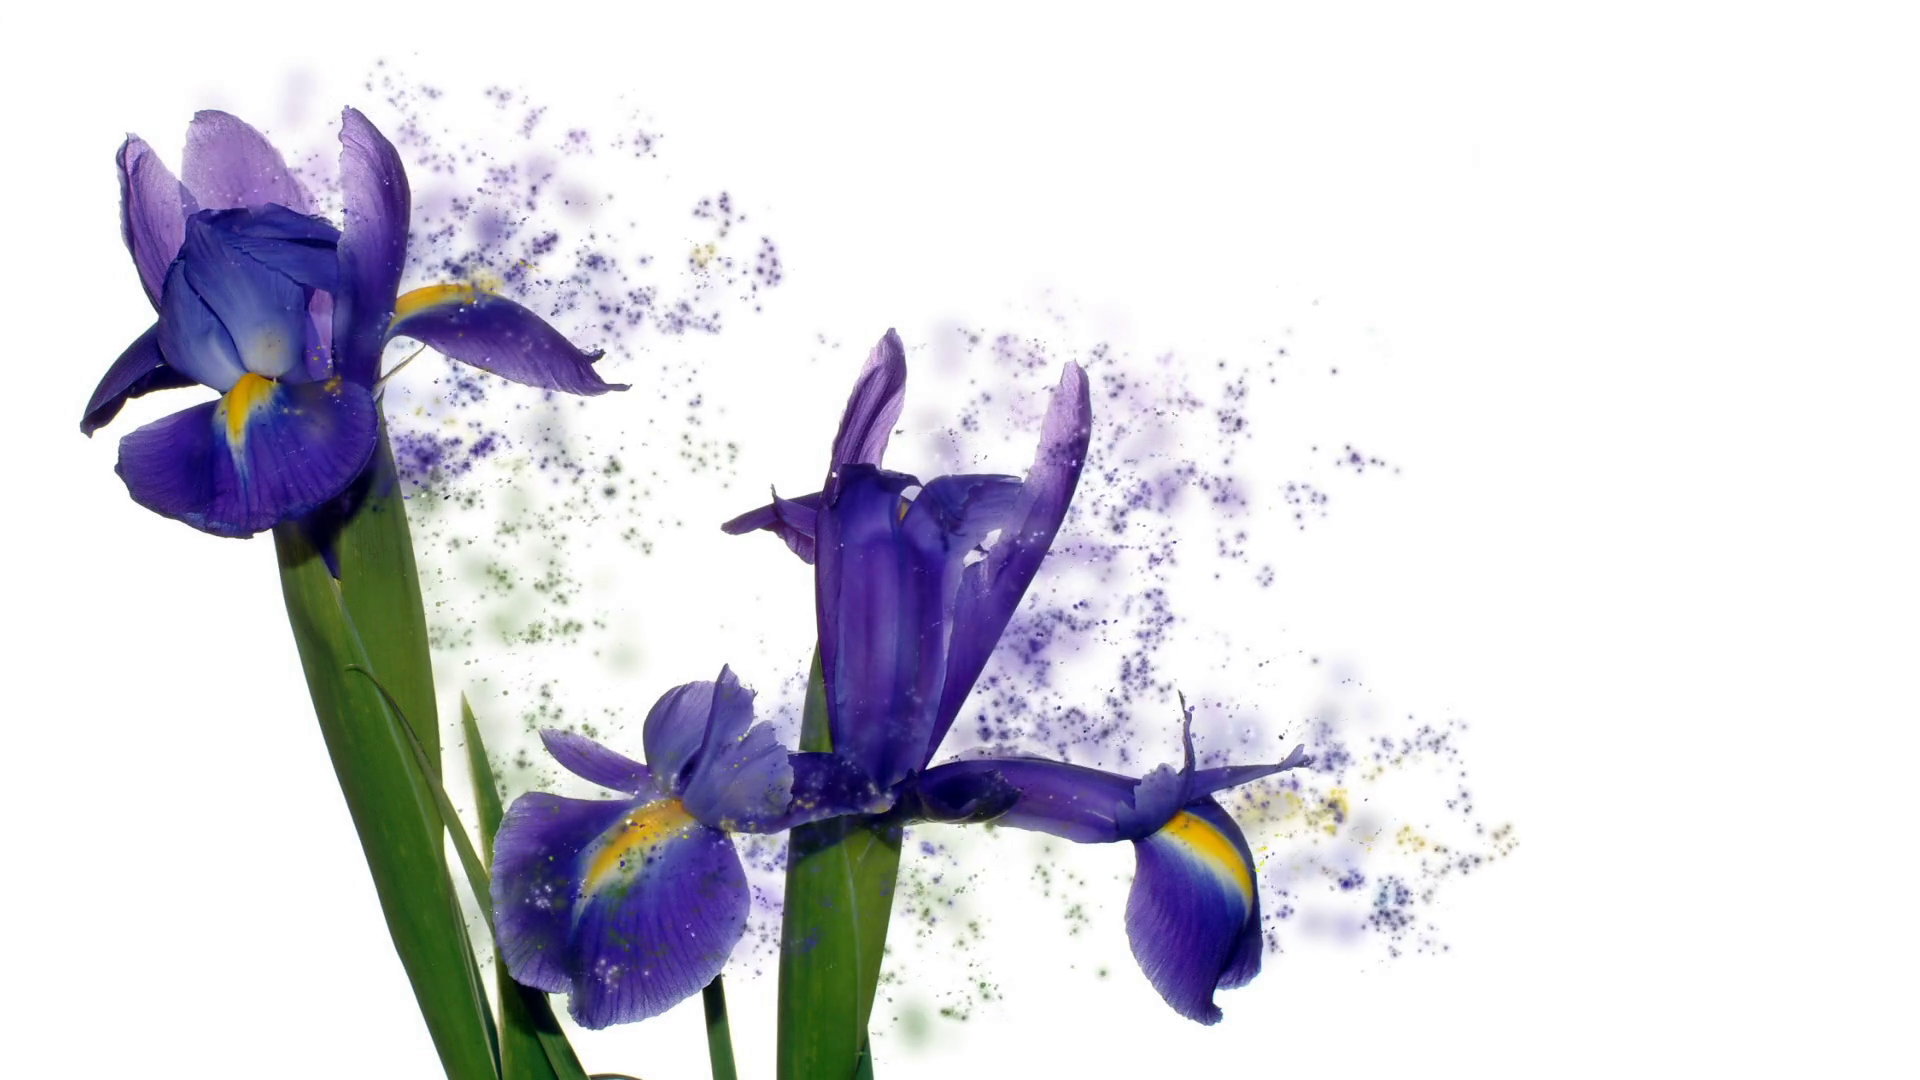 Blue iris flower bouquet for 